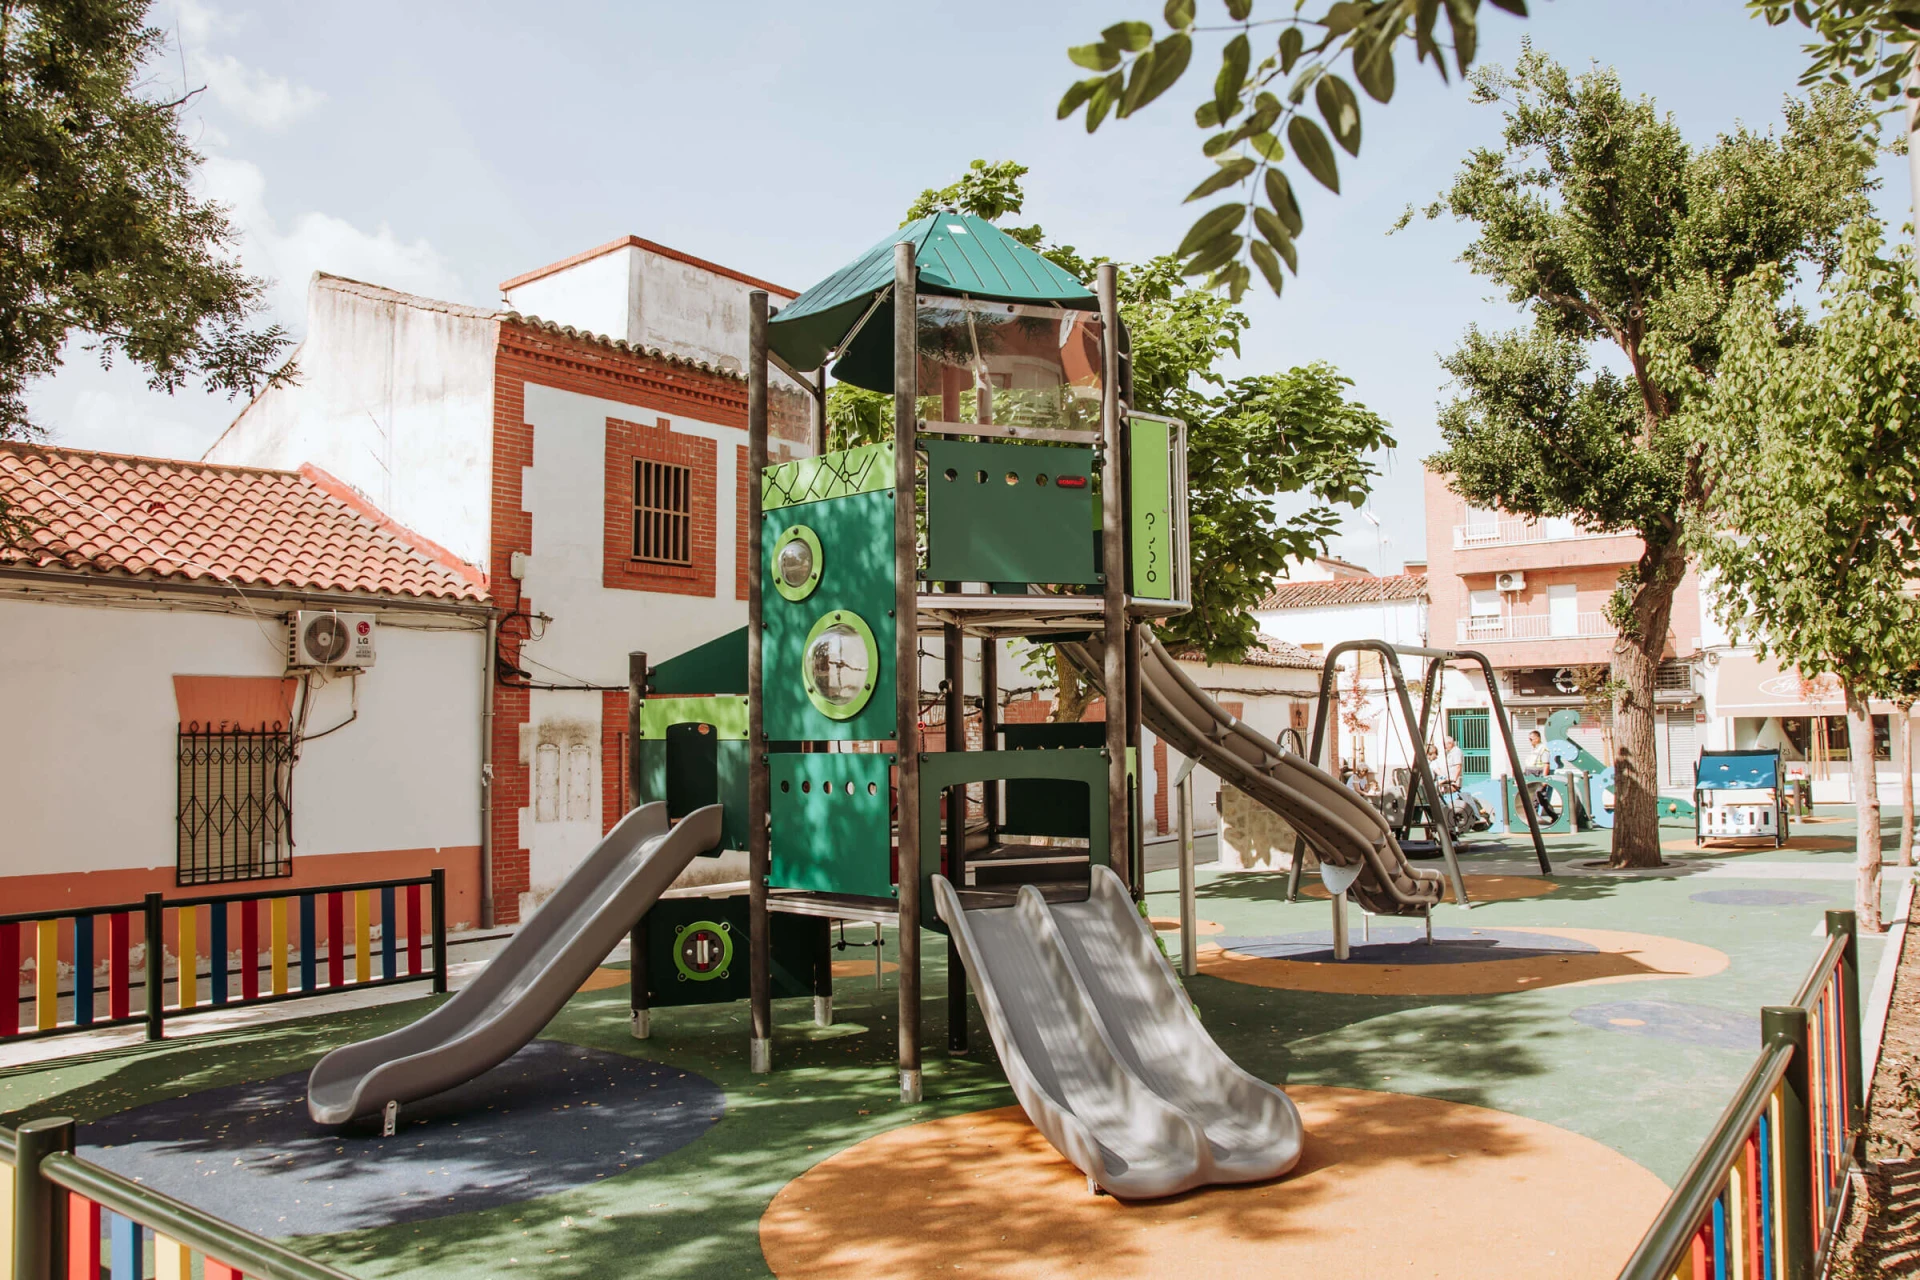 parque infantil en España fabricado con materiales reciclados.